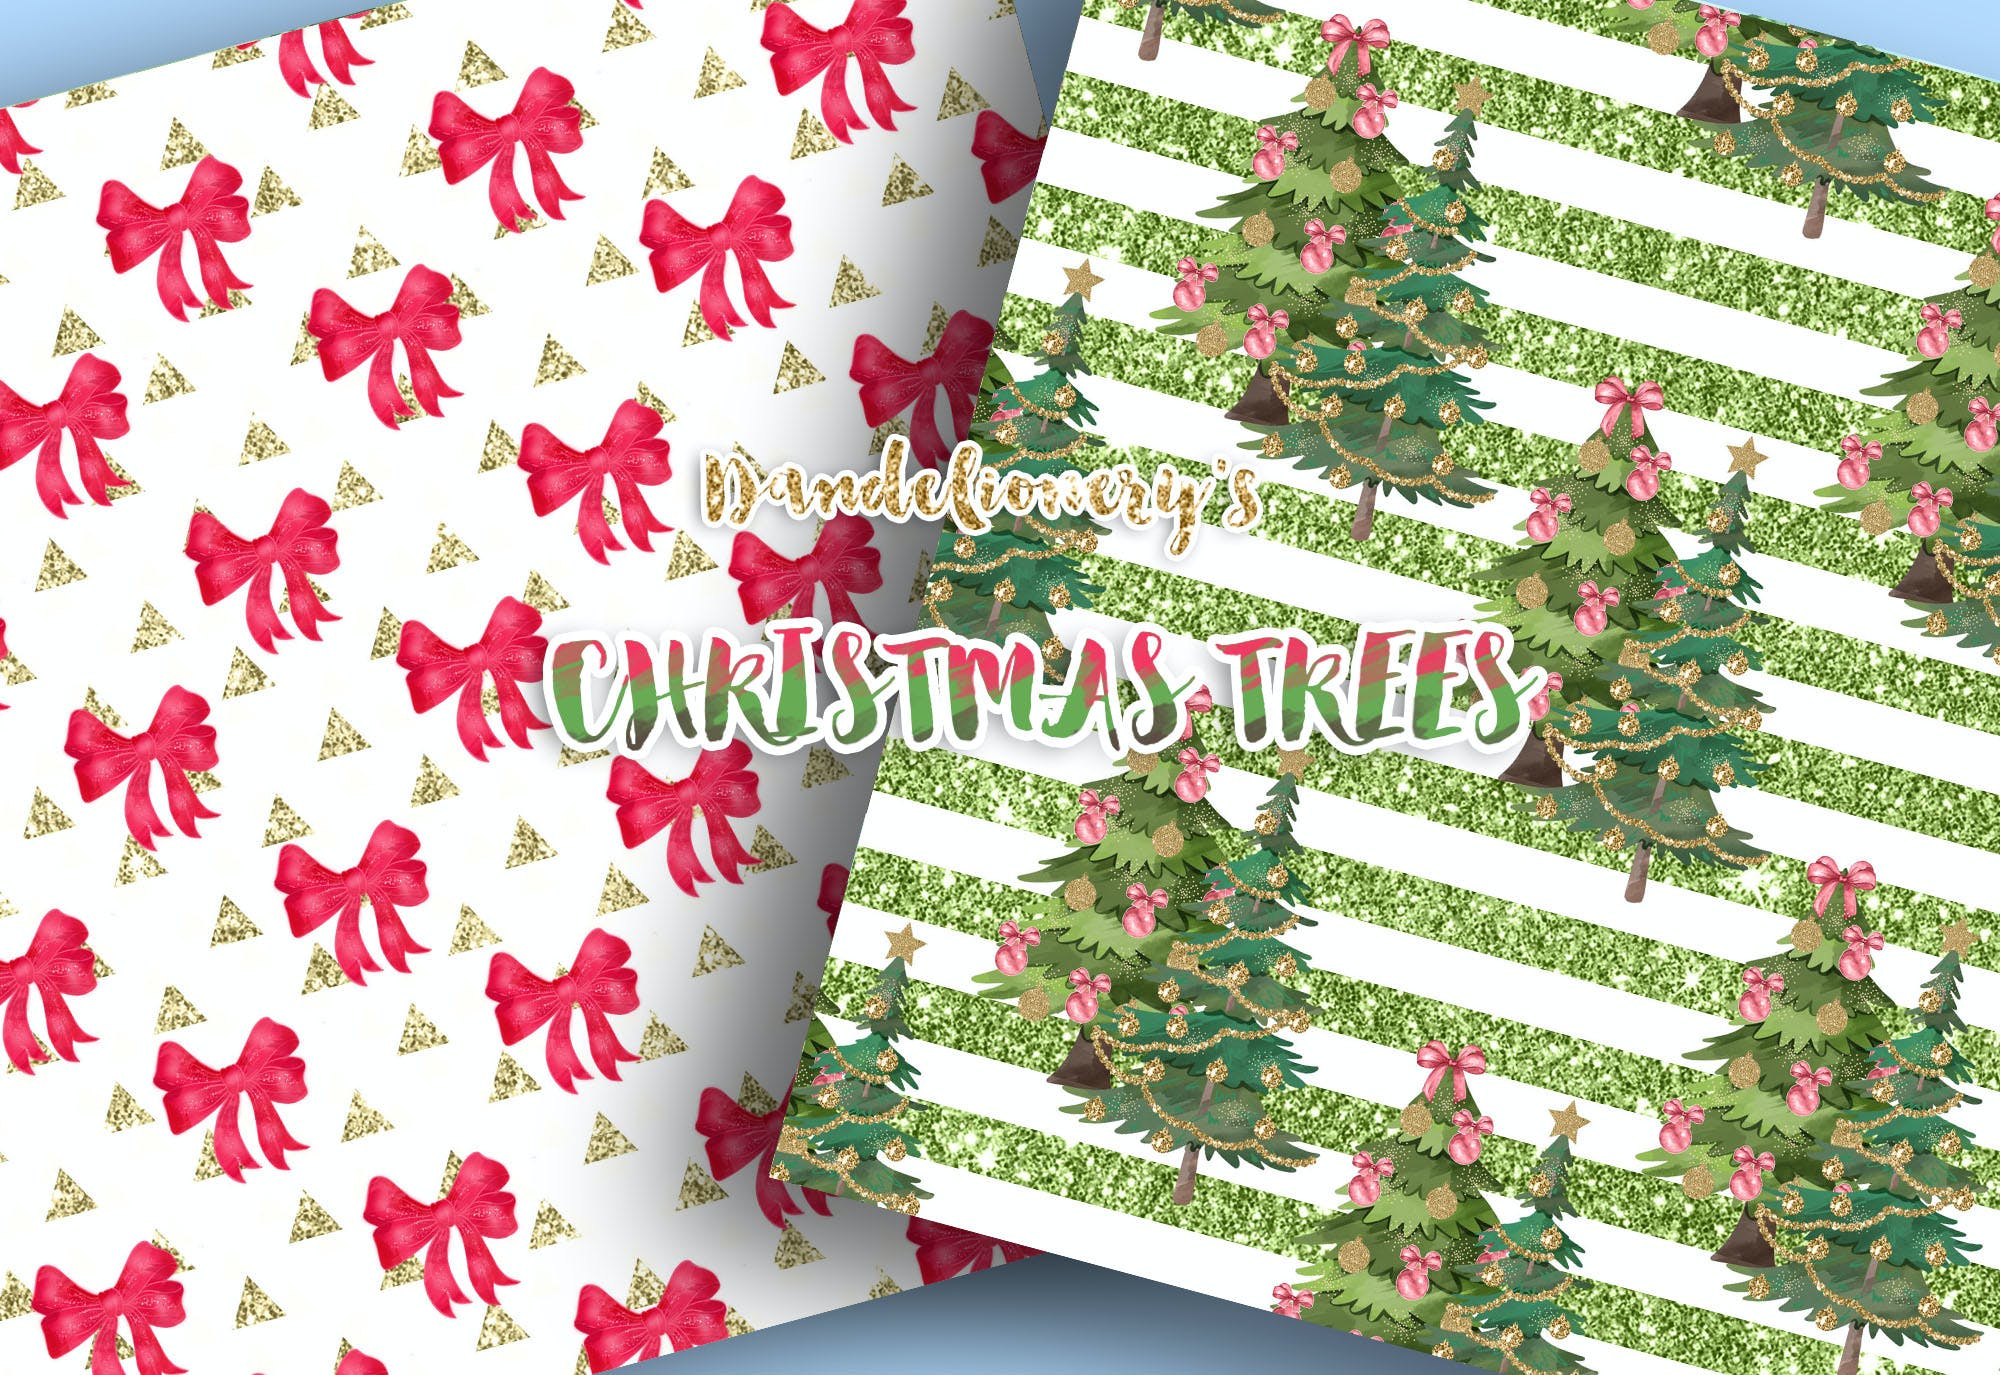 水彩图案背景圣诞树素材包 Christmas tree digital paper pack设计素材模板